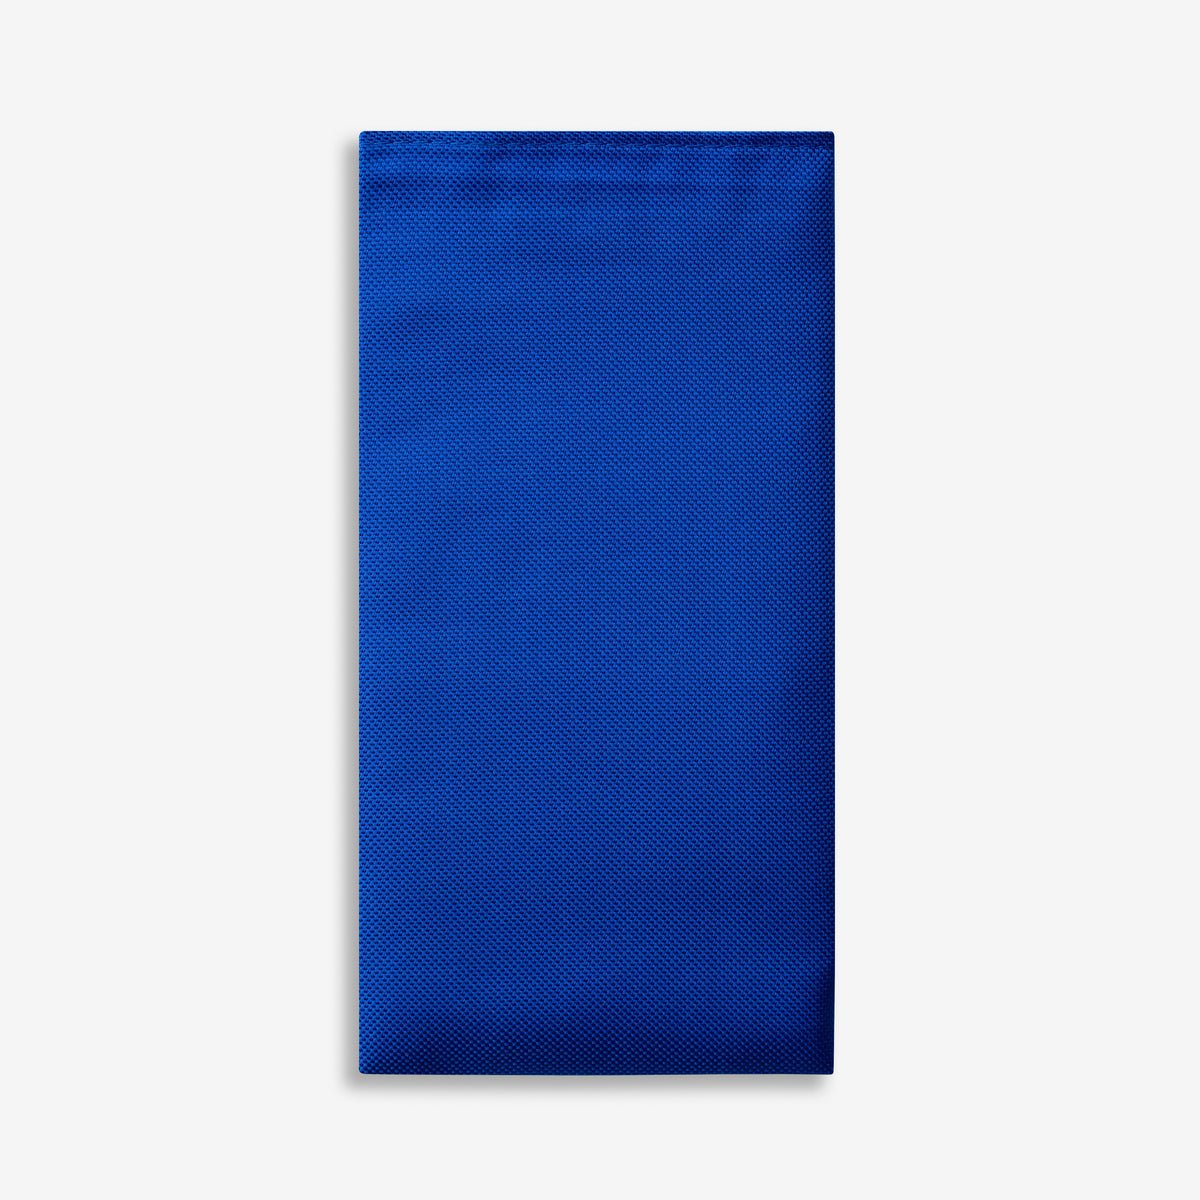 Azul Pocket Square